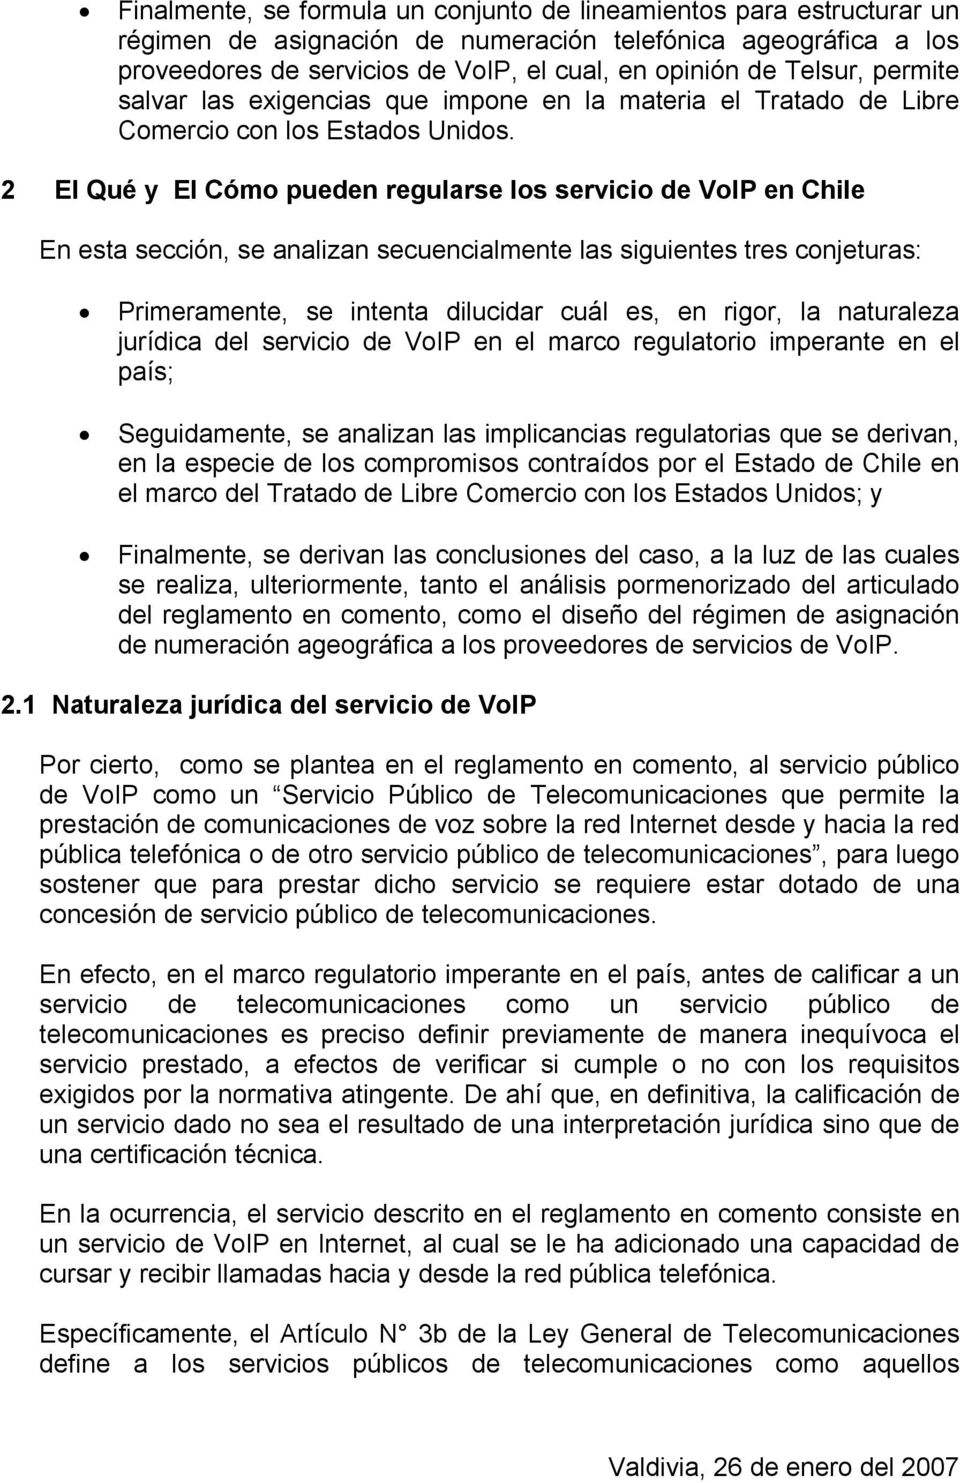 2 El Qué y El Cómo pueden regularse los servicio de VoIP en Chile En esta sección, se analizan secuencialmente las siguientes tres conjeturas: Primeramente, se intenta dilucidar cuál es, en rigor, la